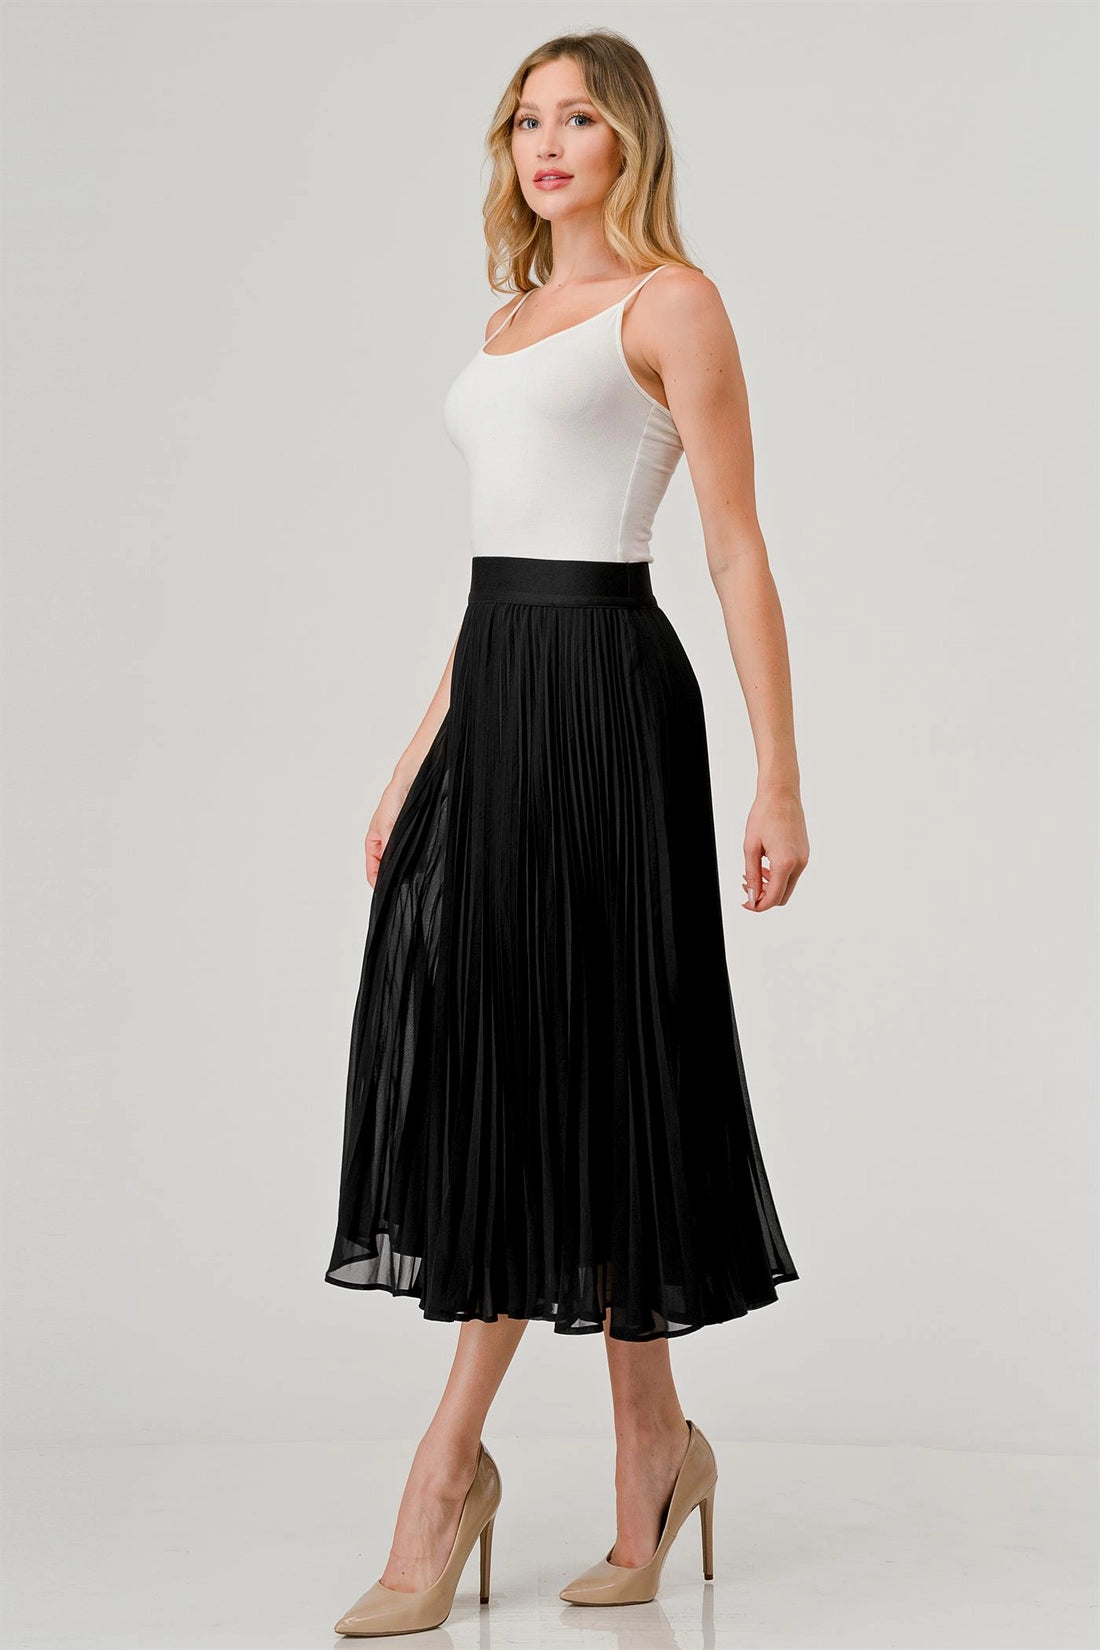 Onyx Black Pleated Skirt